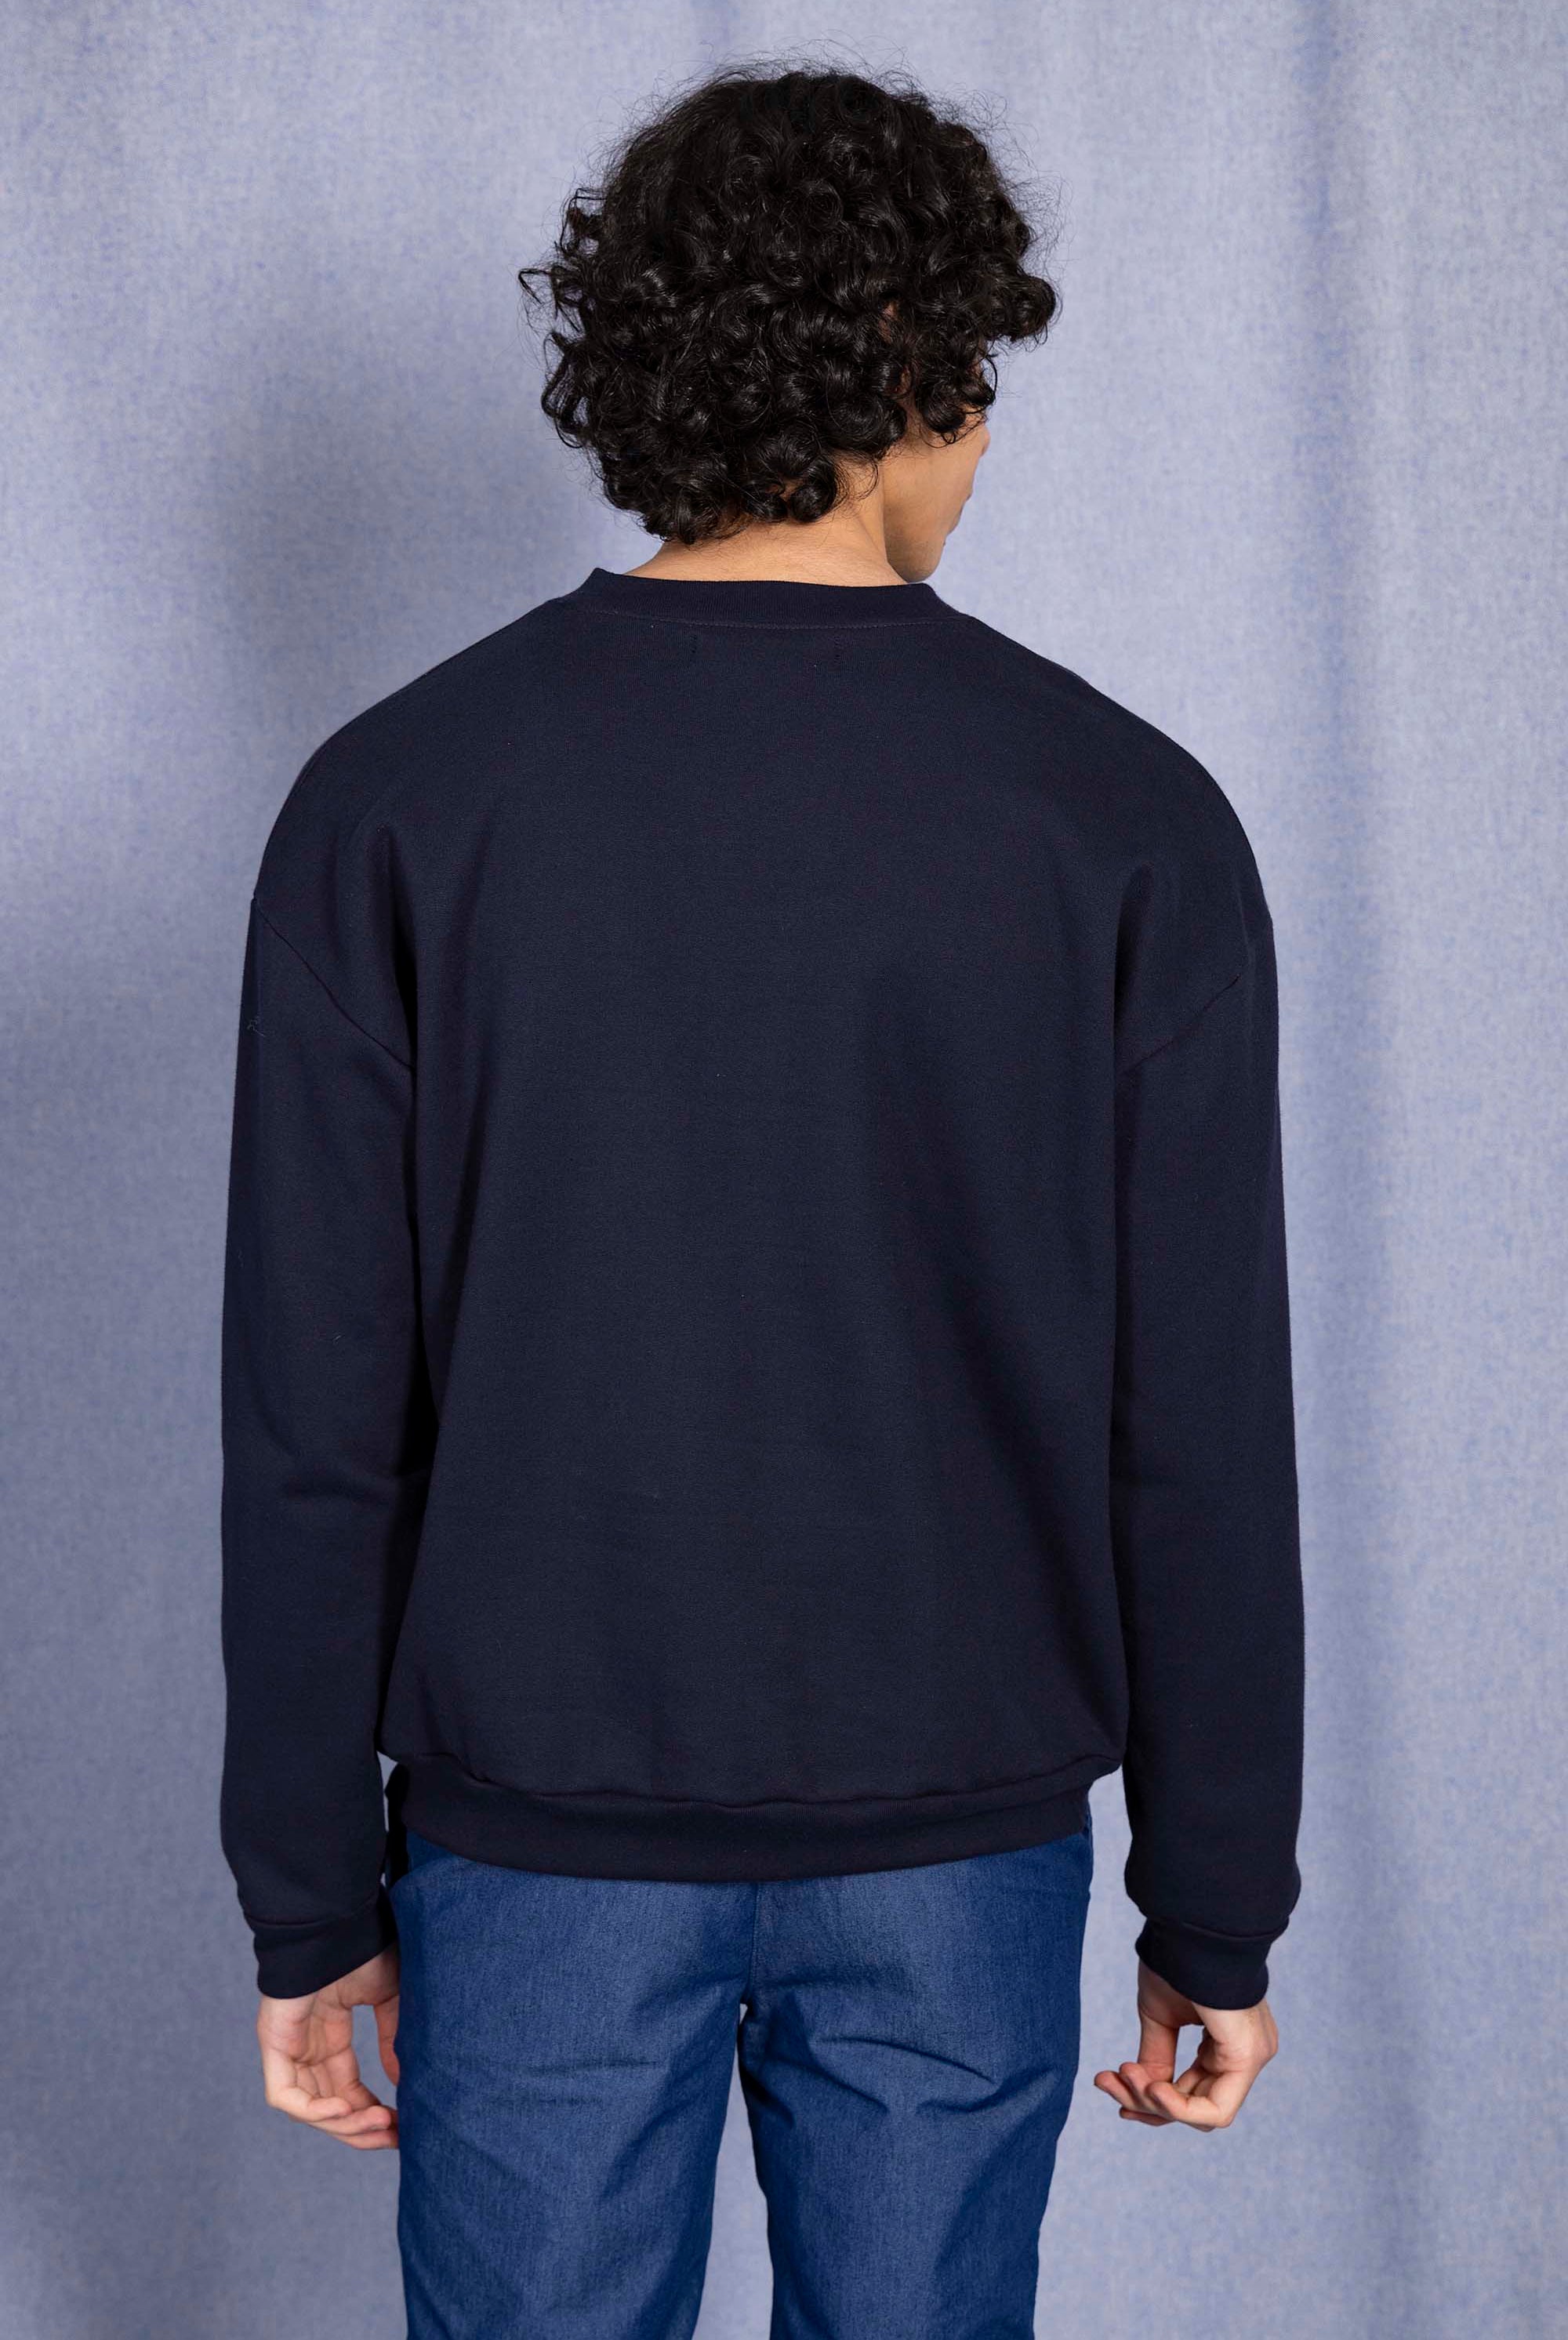 Sweatshirt Angelo Misericordia Bleu Marine sweatshirts haut de gamme en imprimés